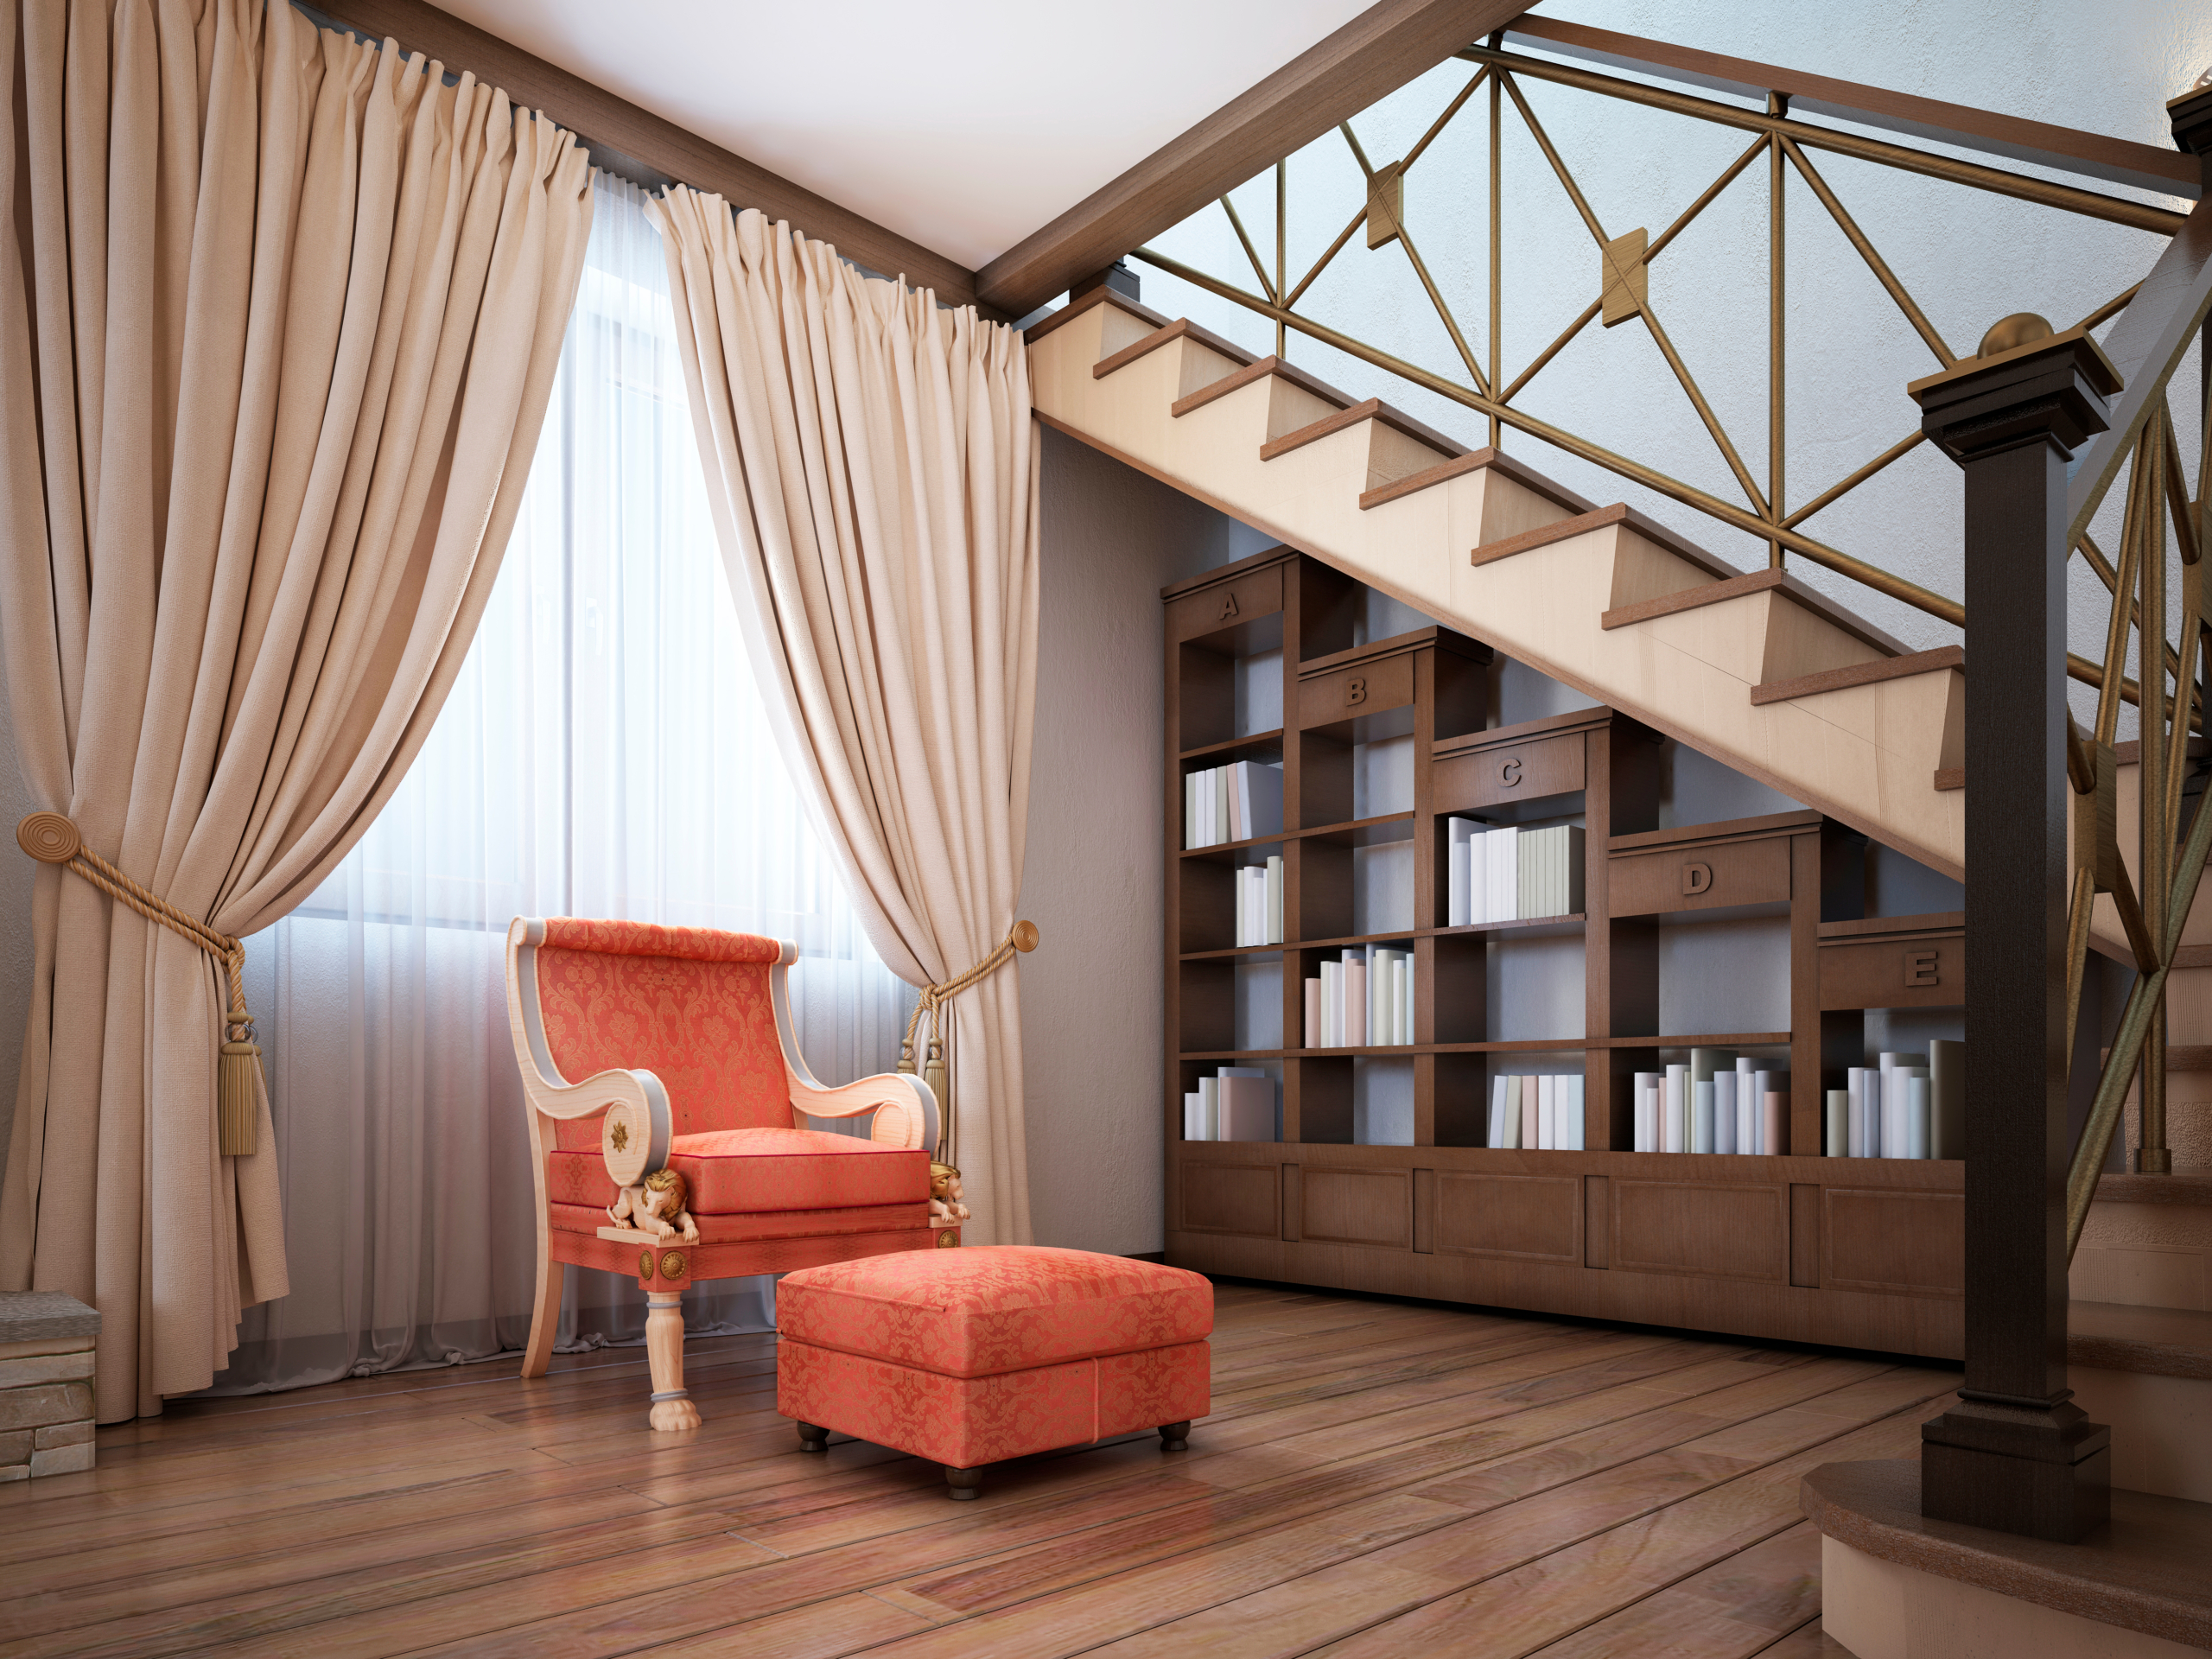 Thực sự rất dễ dàng để tận dụng tốt góc dưới cầu thang, tạo ra một không gian đọc sách thoải mái tại nhà! (Ảnh: Shutterstock)